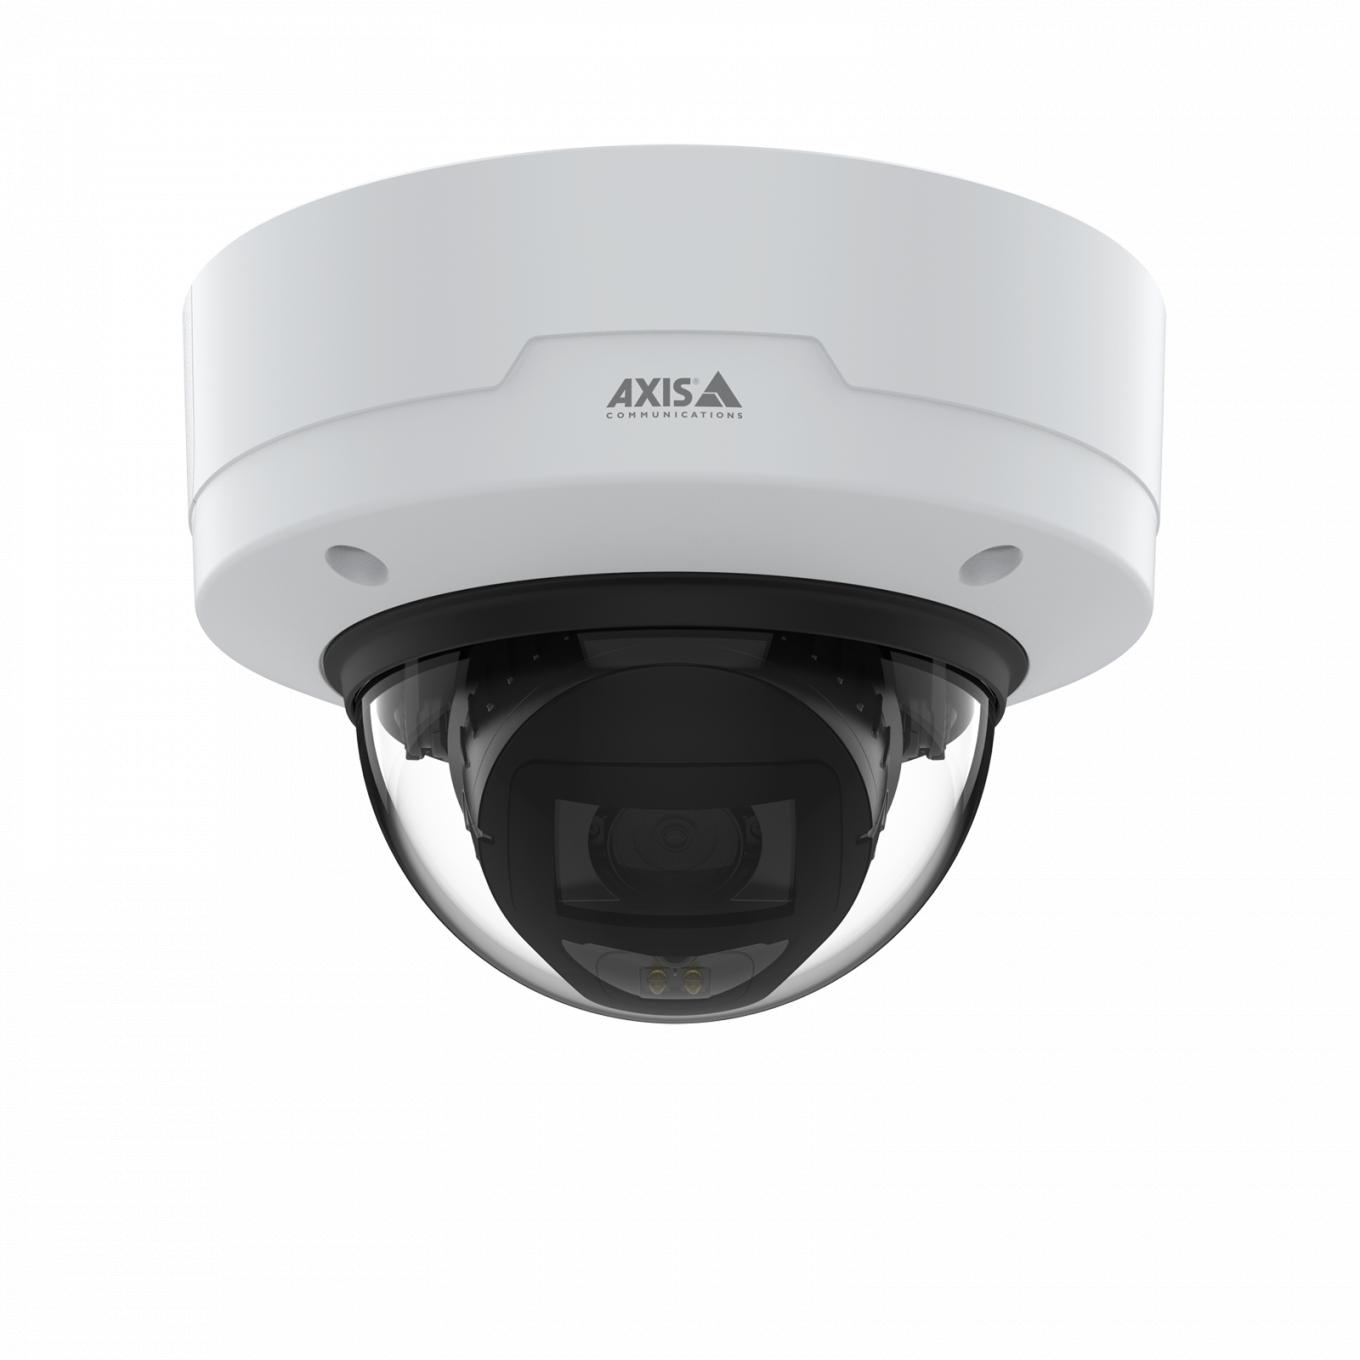 AXIS P3268-LV Dome Camera montada no teto vista pela frente